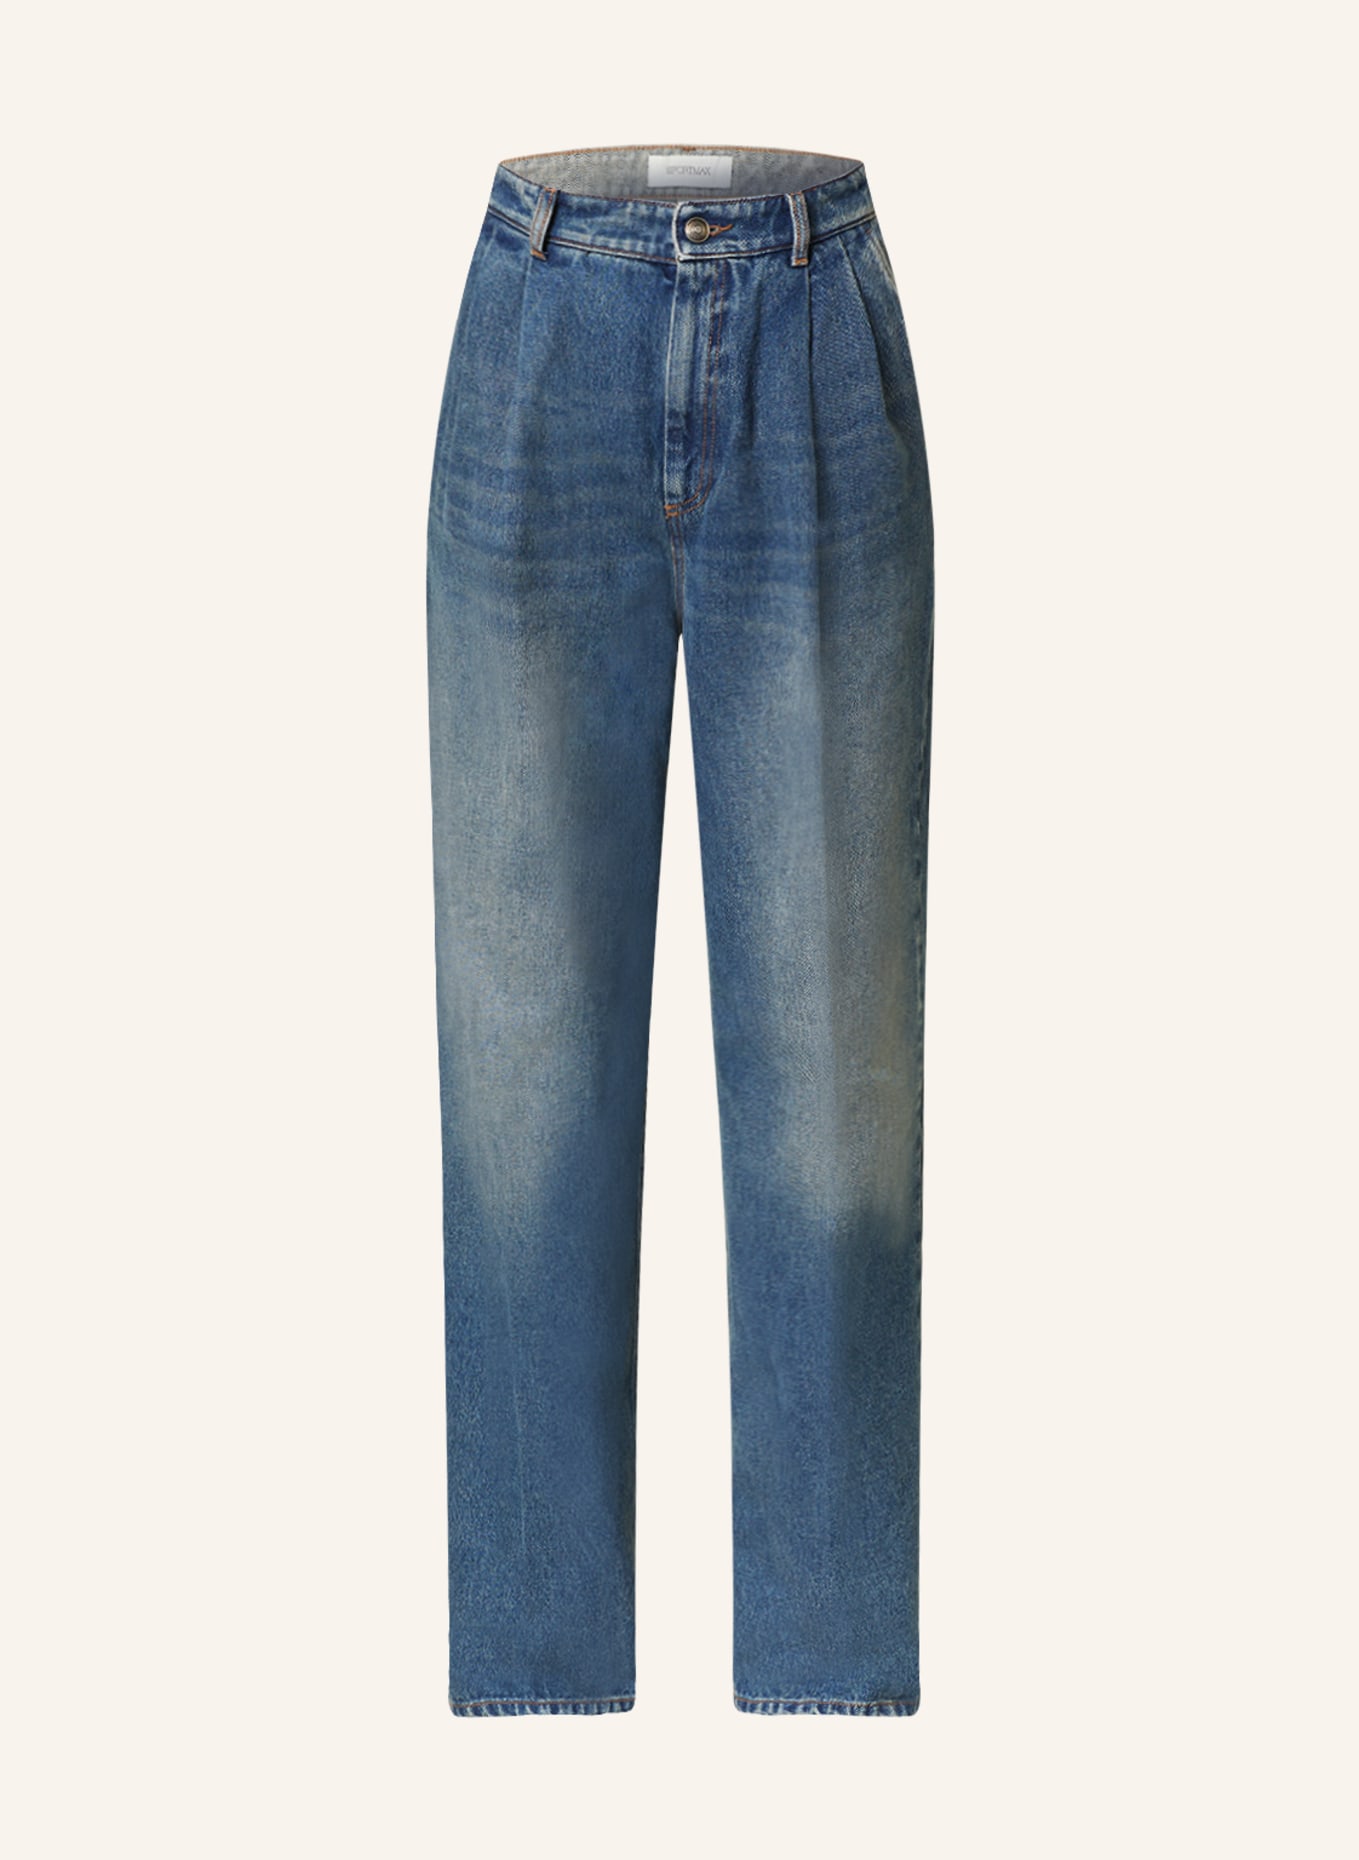 SPORTMAX Jeans RAMPUR, Farbe: 004 CORNFLOWER BLUE (Bild 1)